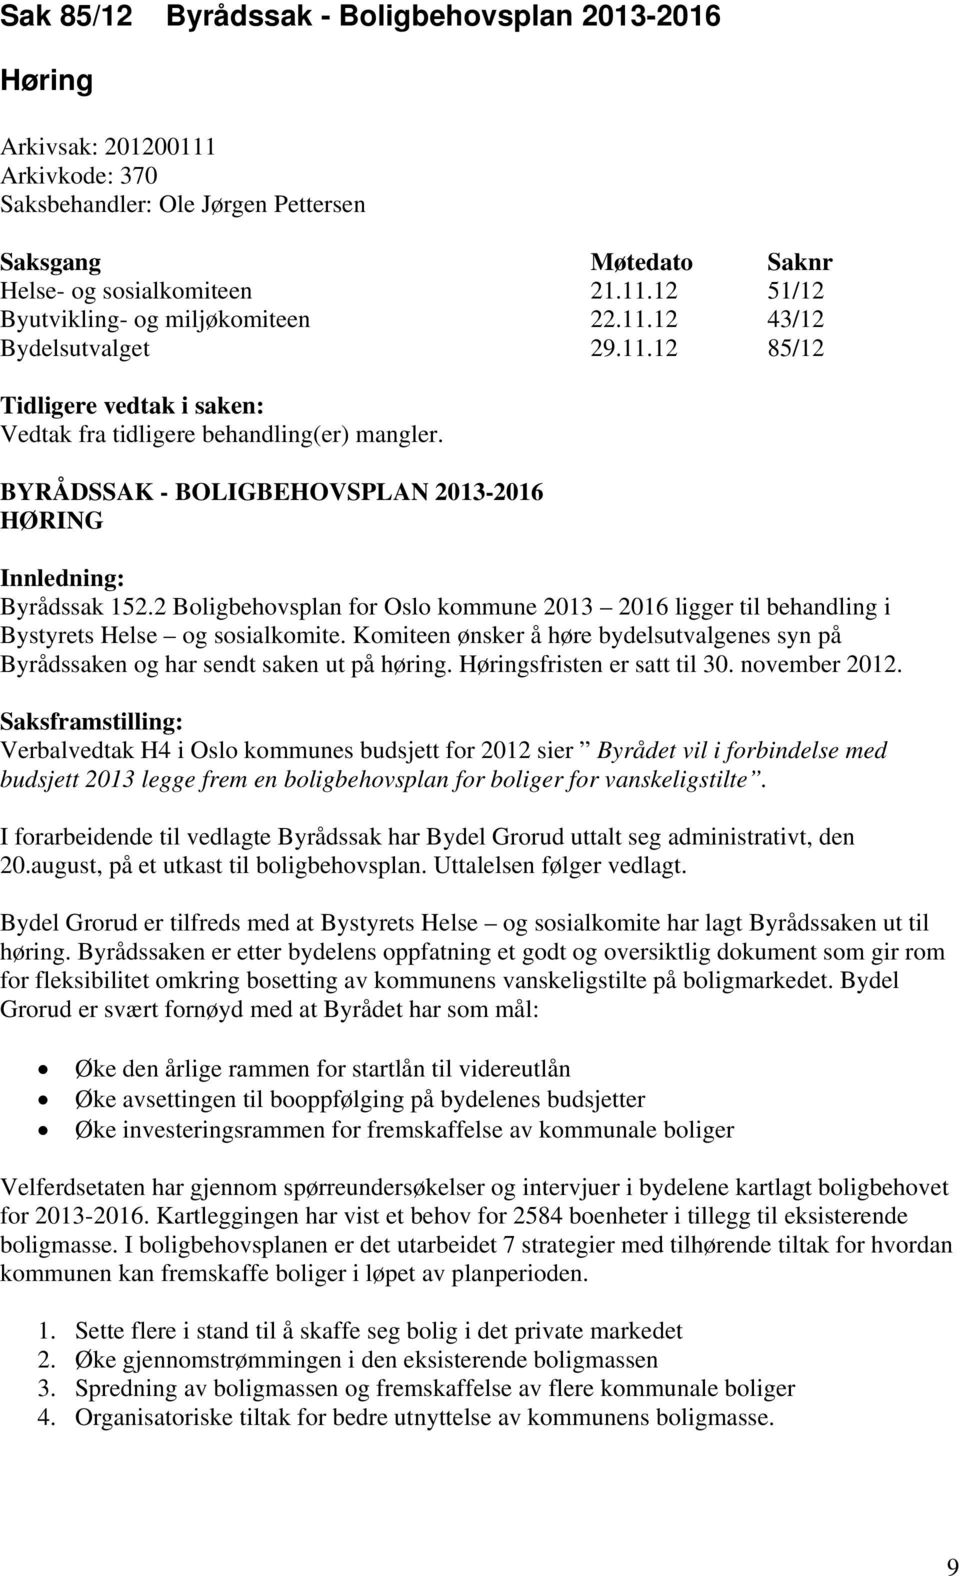 2 Boligbehovsplan for Oslo kommune 2013 2016 ligger til behandling i Bystyrets Helse og sosialkomite. Komiteen ønsker å høre bydelsutvalgenes syn på Byrådssaken og har sendt saken ut på høring.